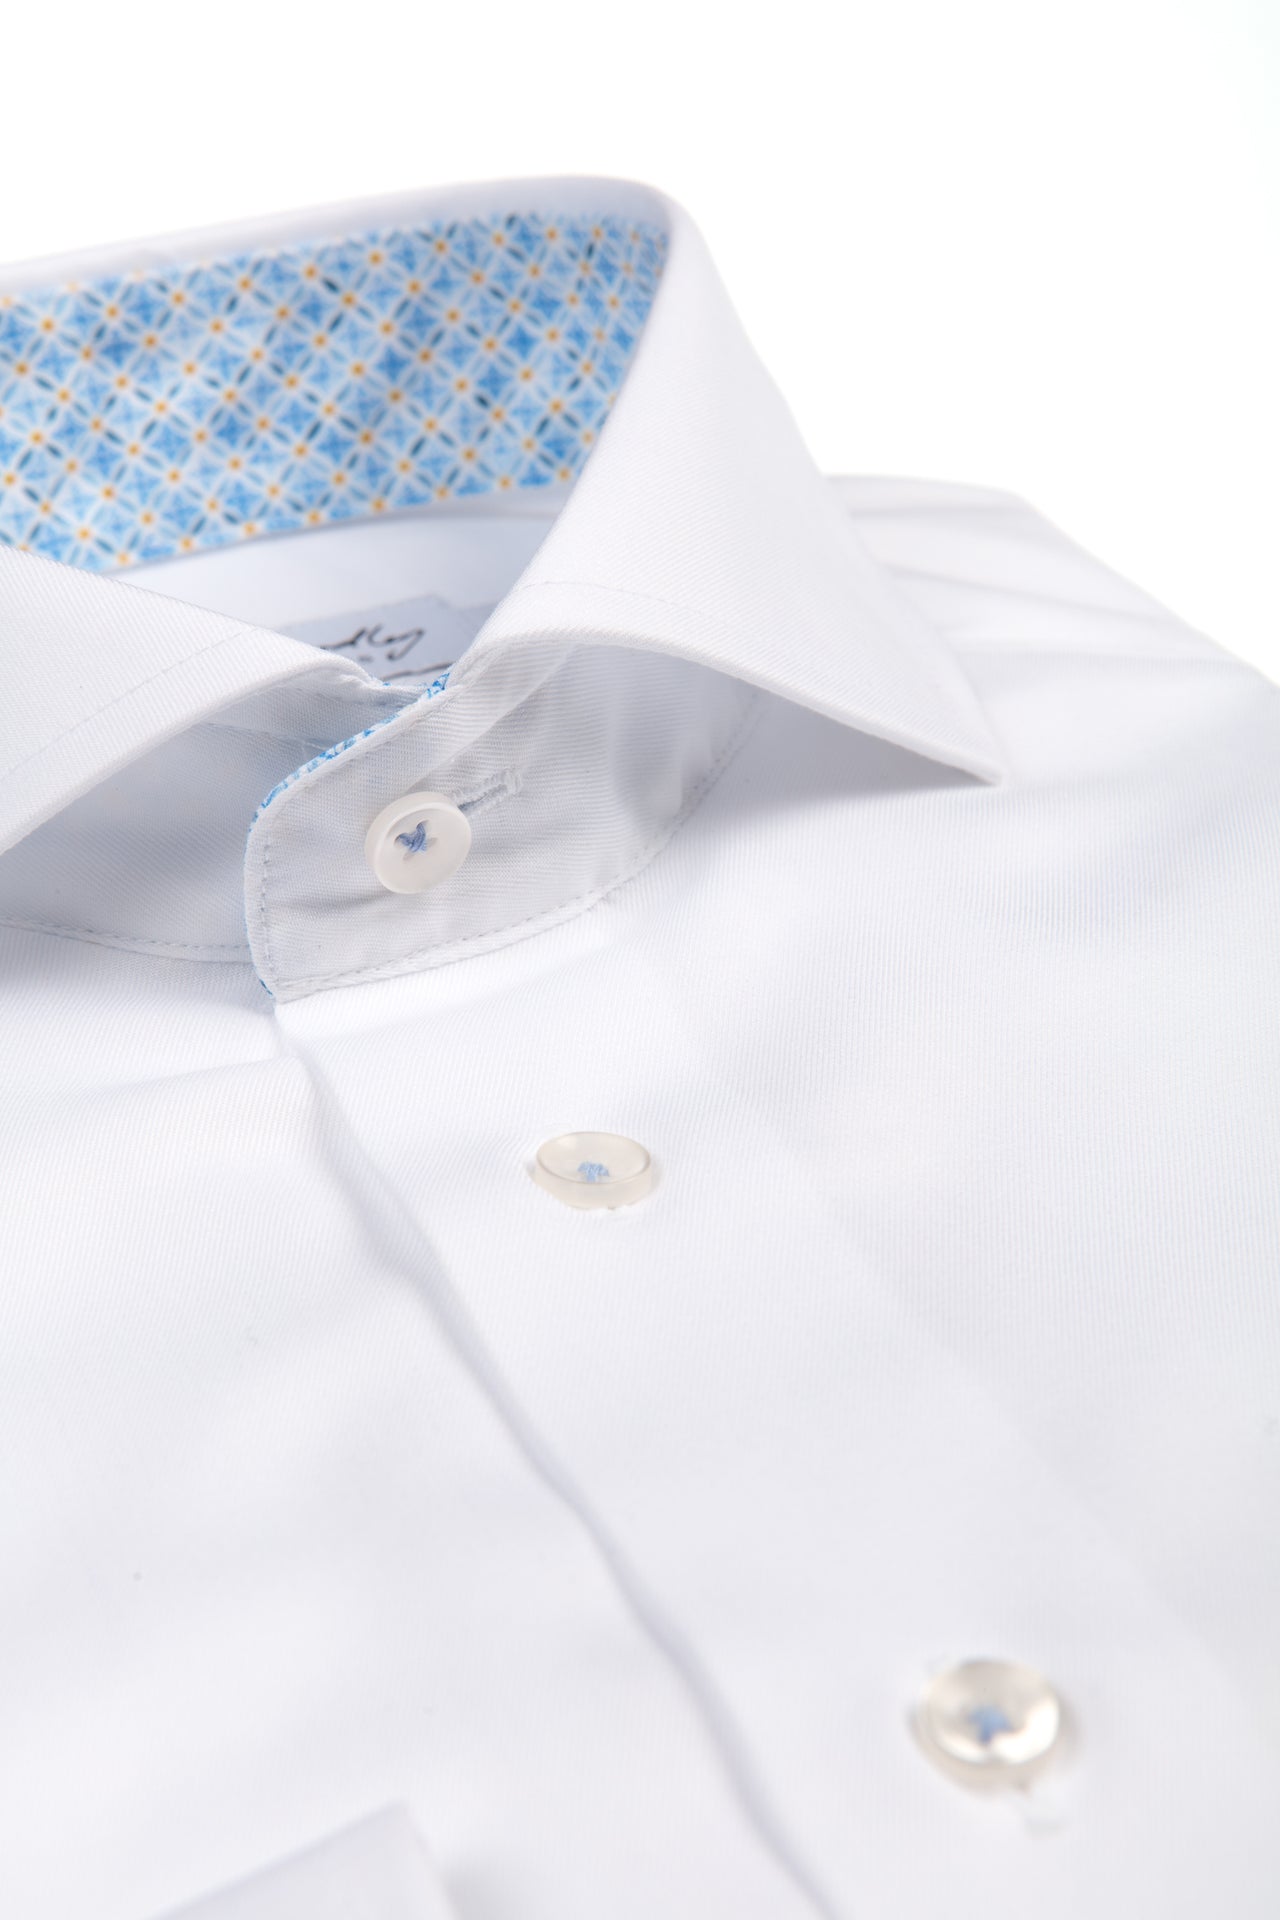 Wit hemd met blauwe raster print